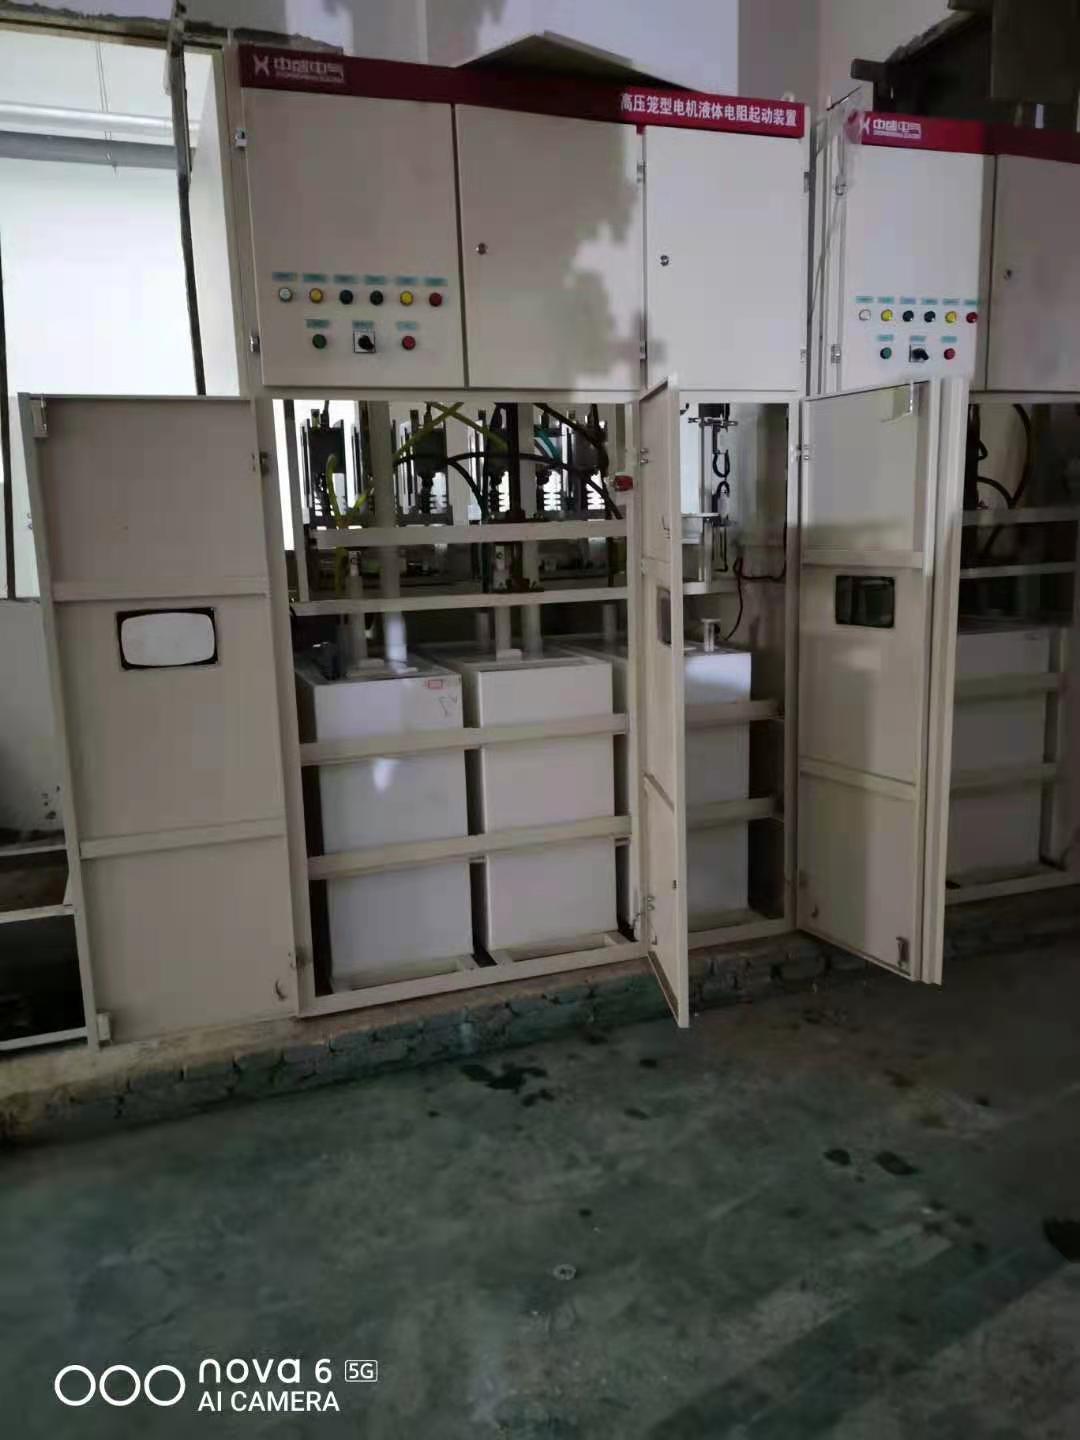 鼠笼型水阻柜/低压鼠笼型水阻柜/水电阻启动柜/笼型液阻柜/图片